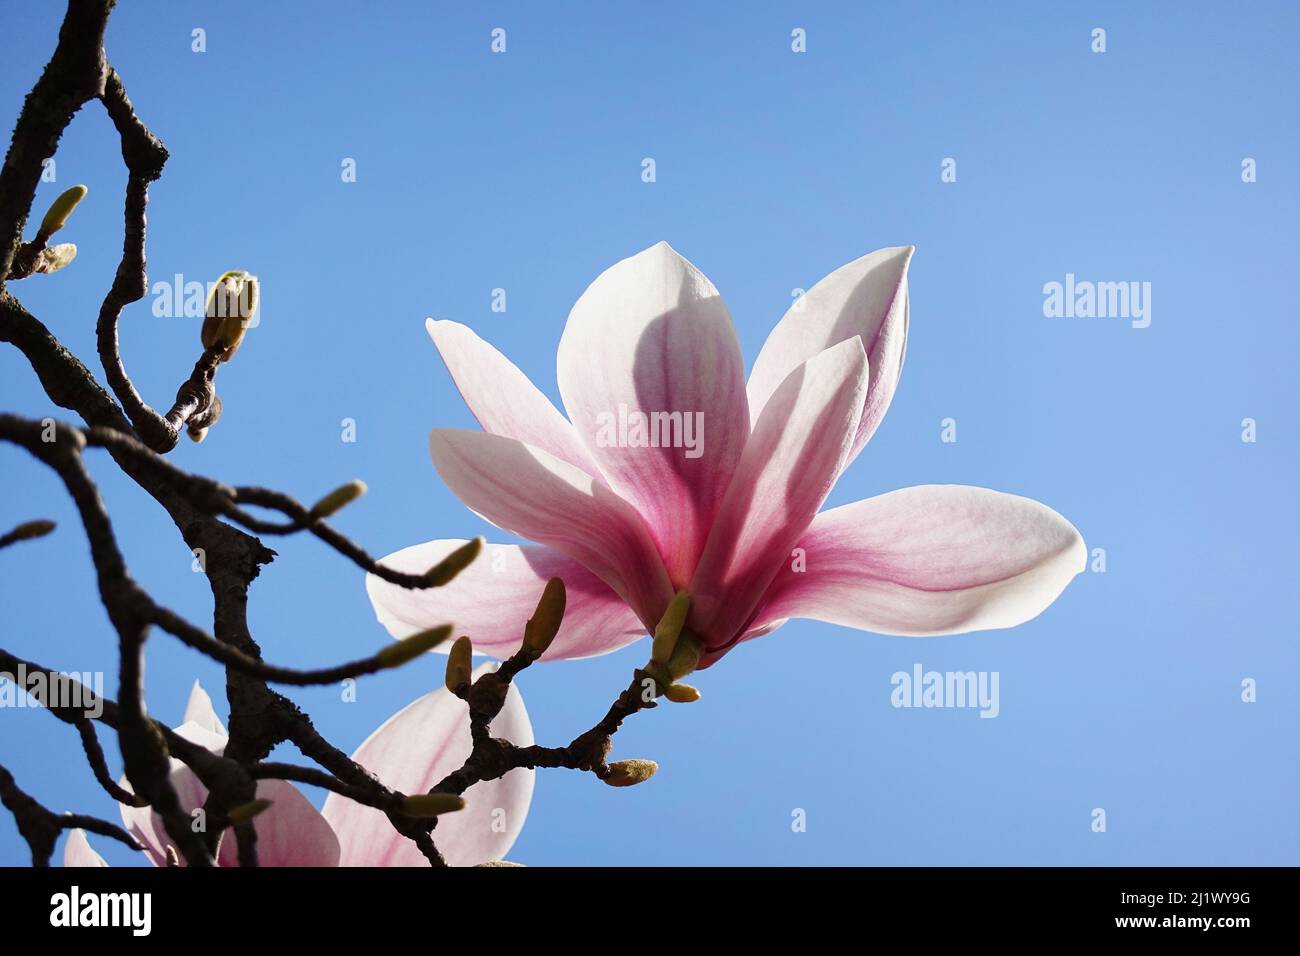 árbol de magnolia rosa retroiluminado florece contra el cielo azul claro Foto de stock